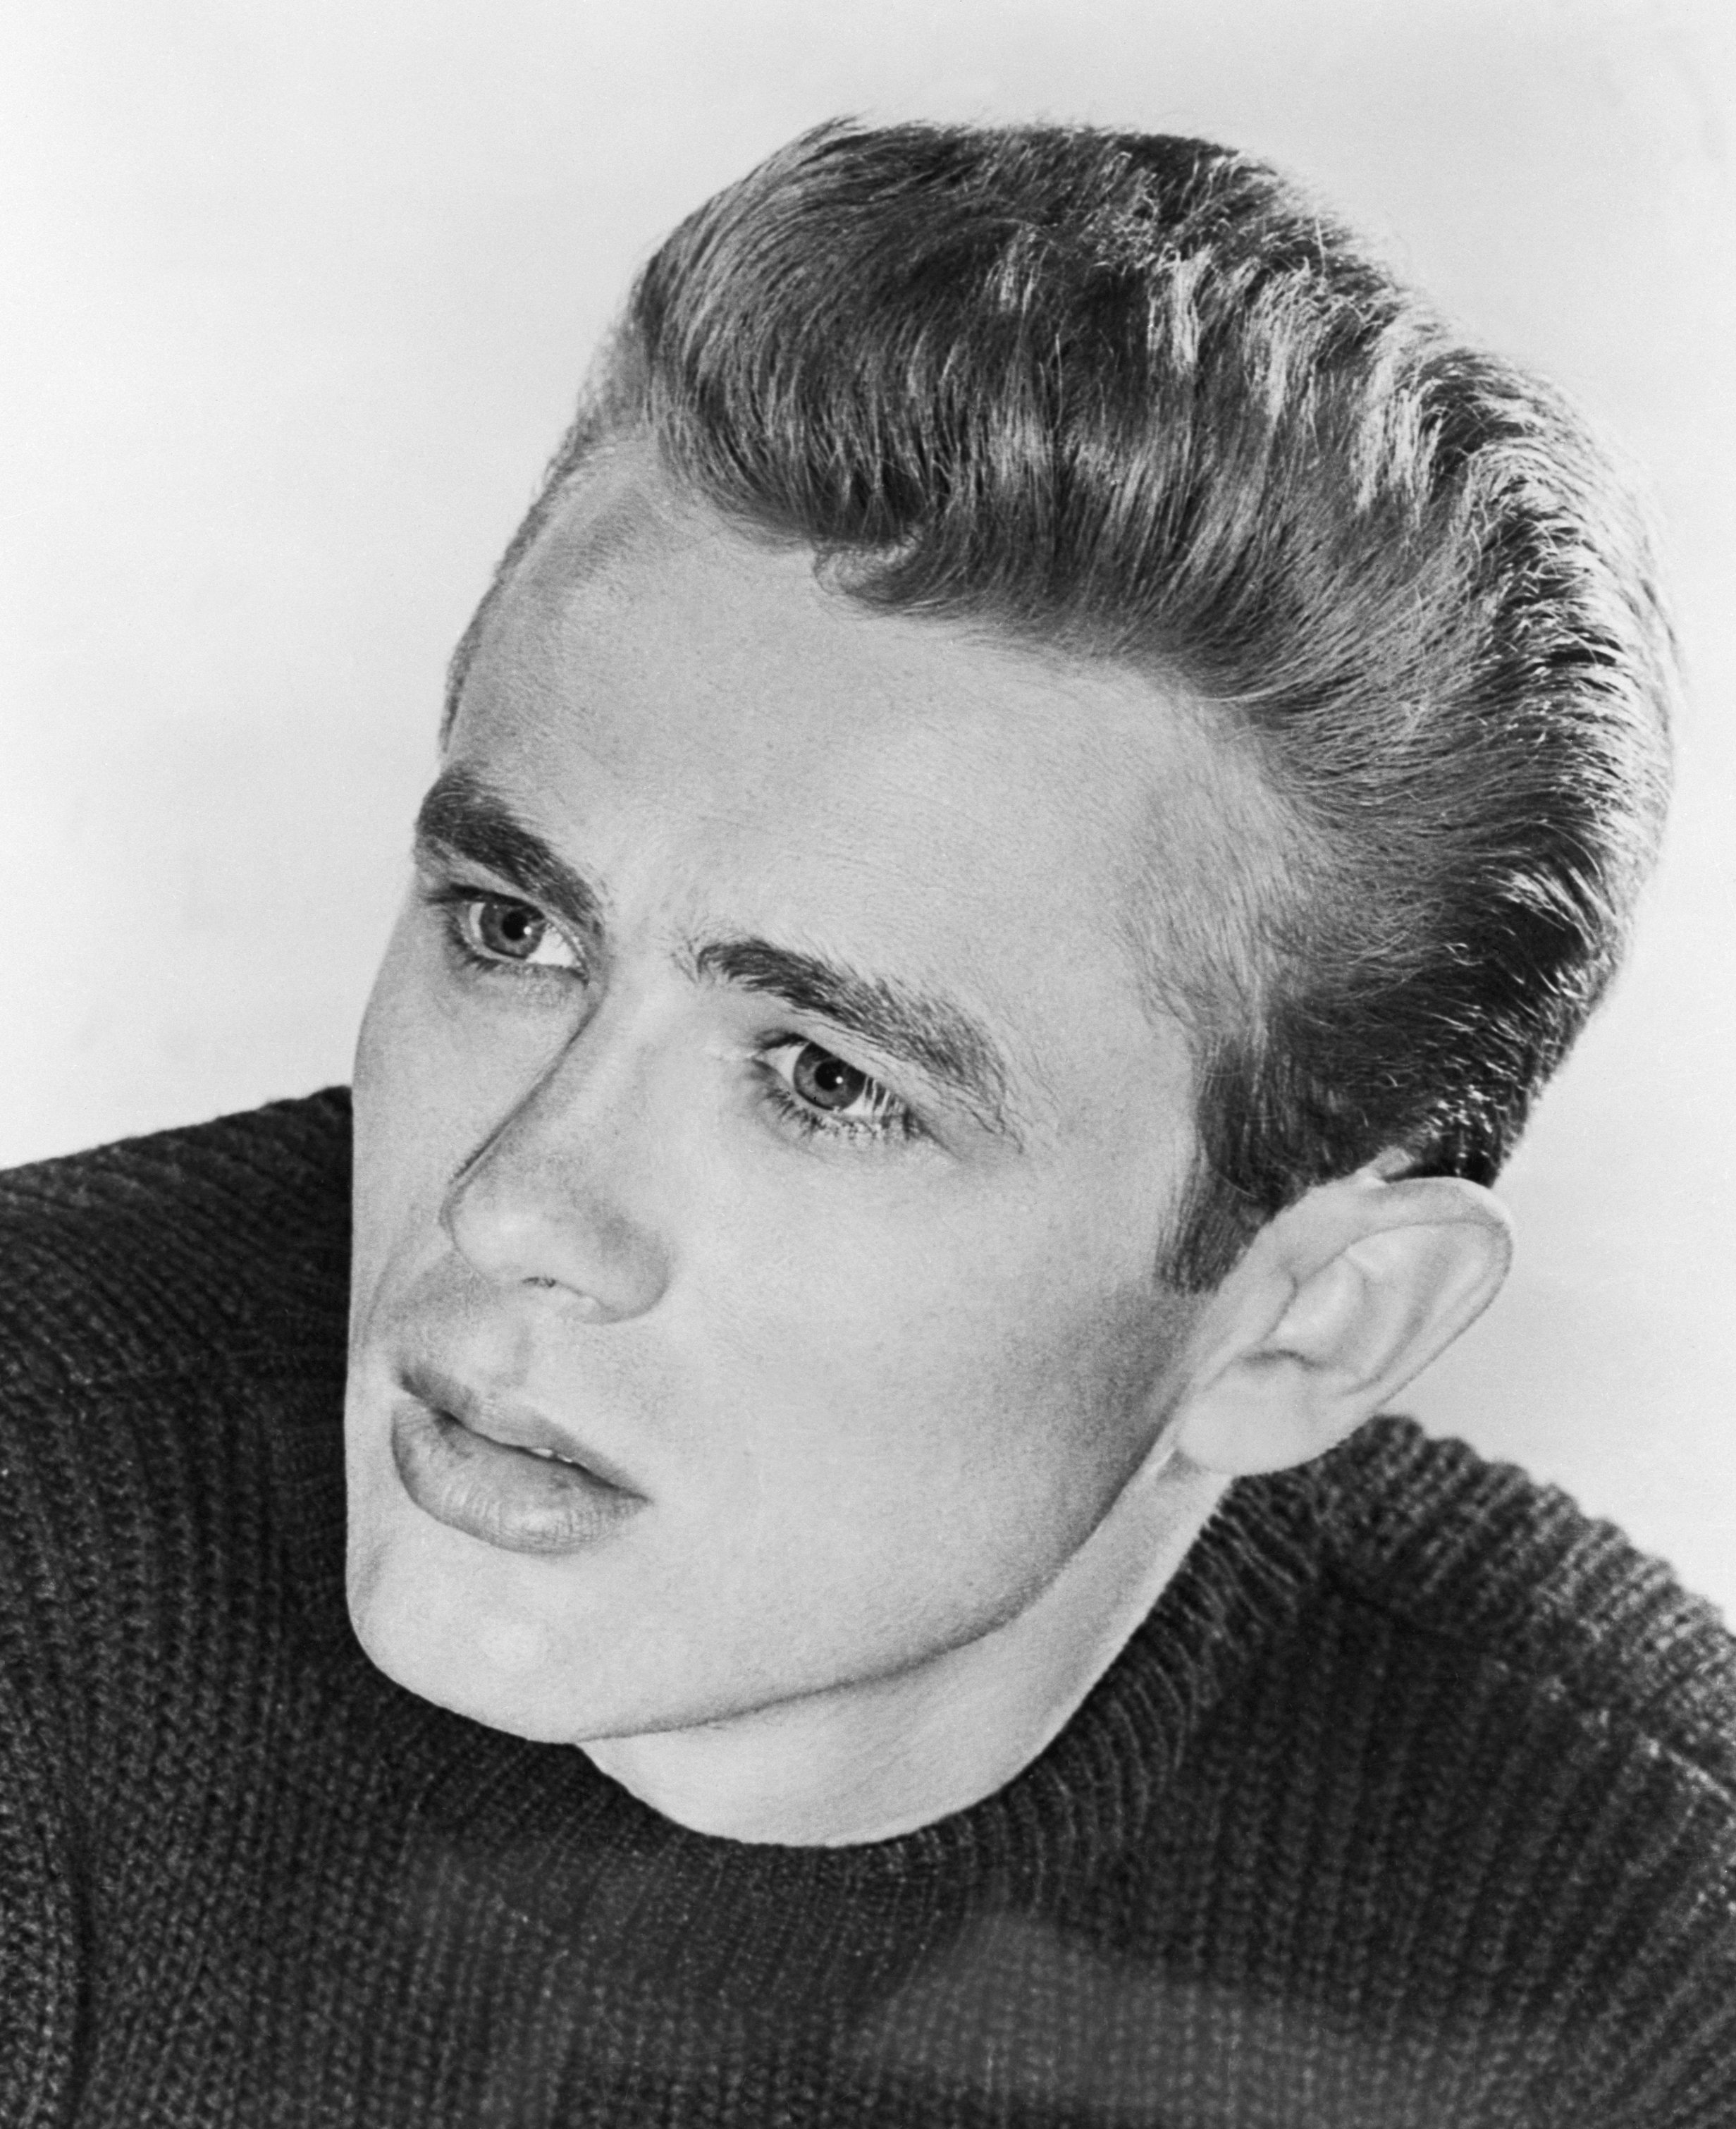 Portrait of James Dean. Ca. 1950s. | Source: Getty Images